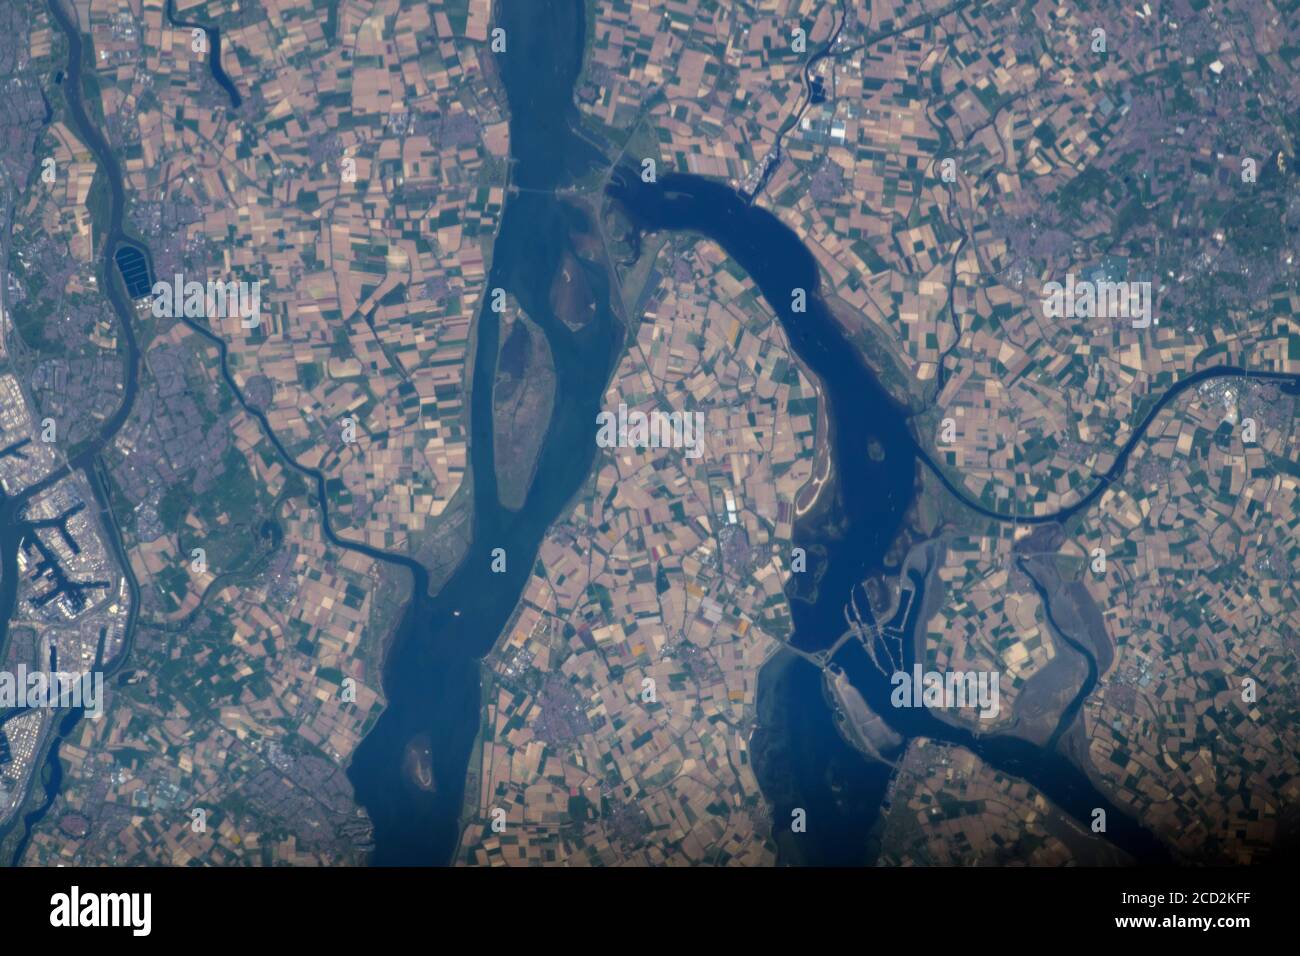 PAYS-BAS - 23 avril 2020 - le delta Rhin–Meuse–Escaut, un delta fluvial des pays-Bas, est représenté par la Station spatiale internationale - Banque D'Images